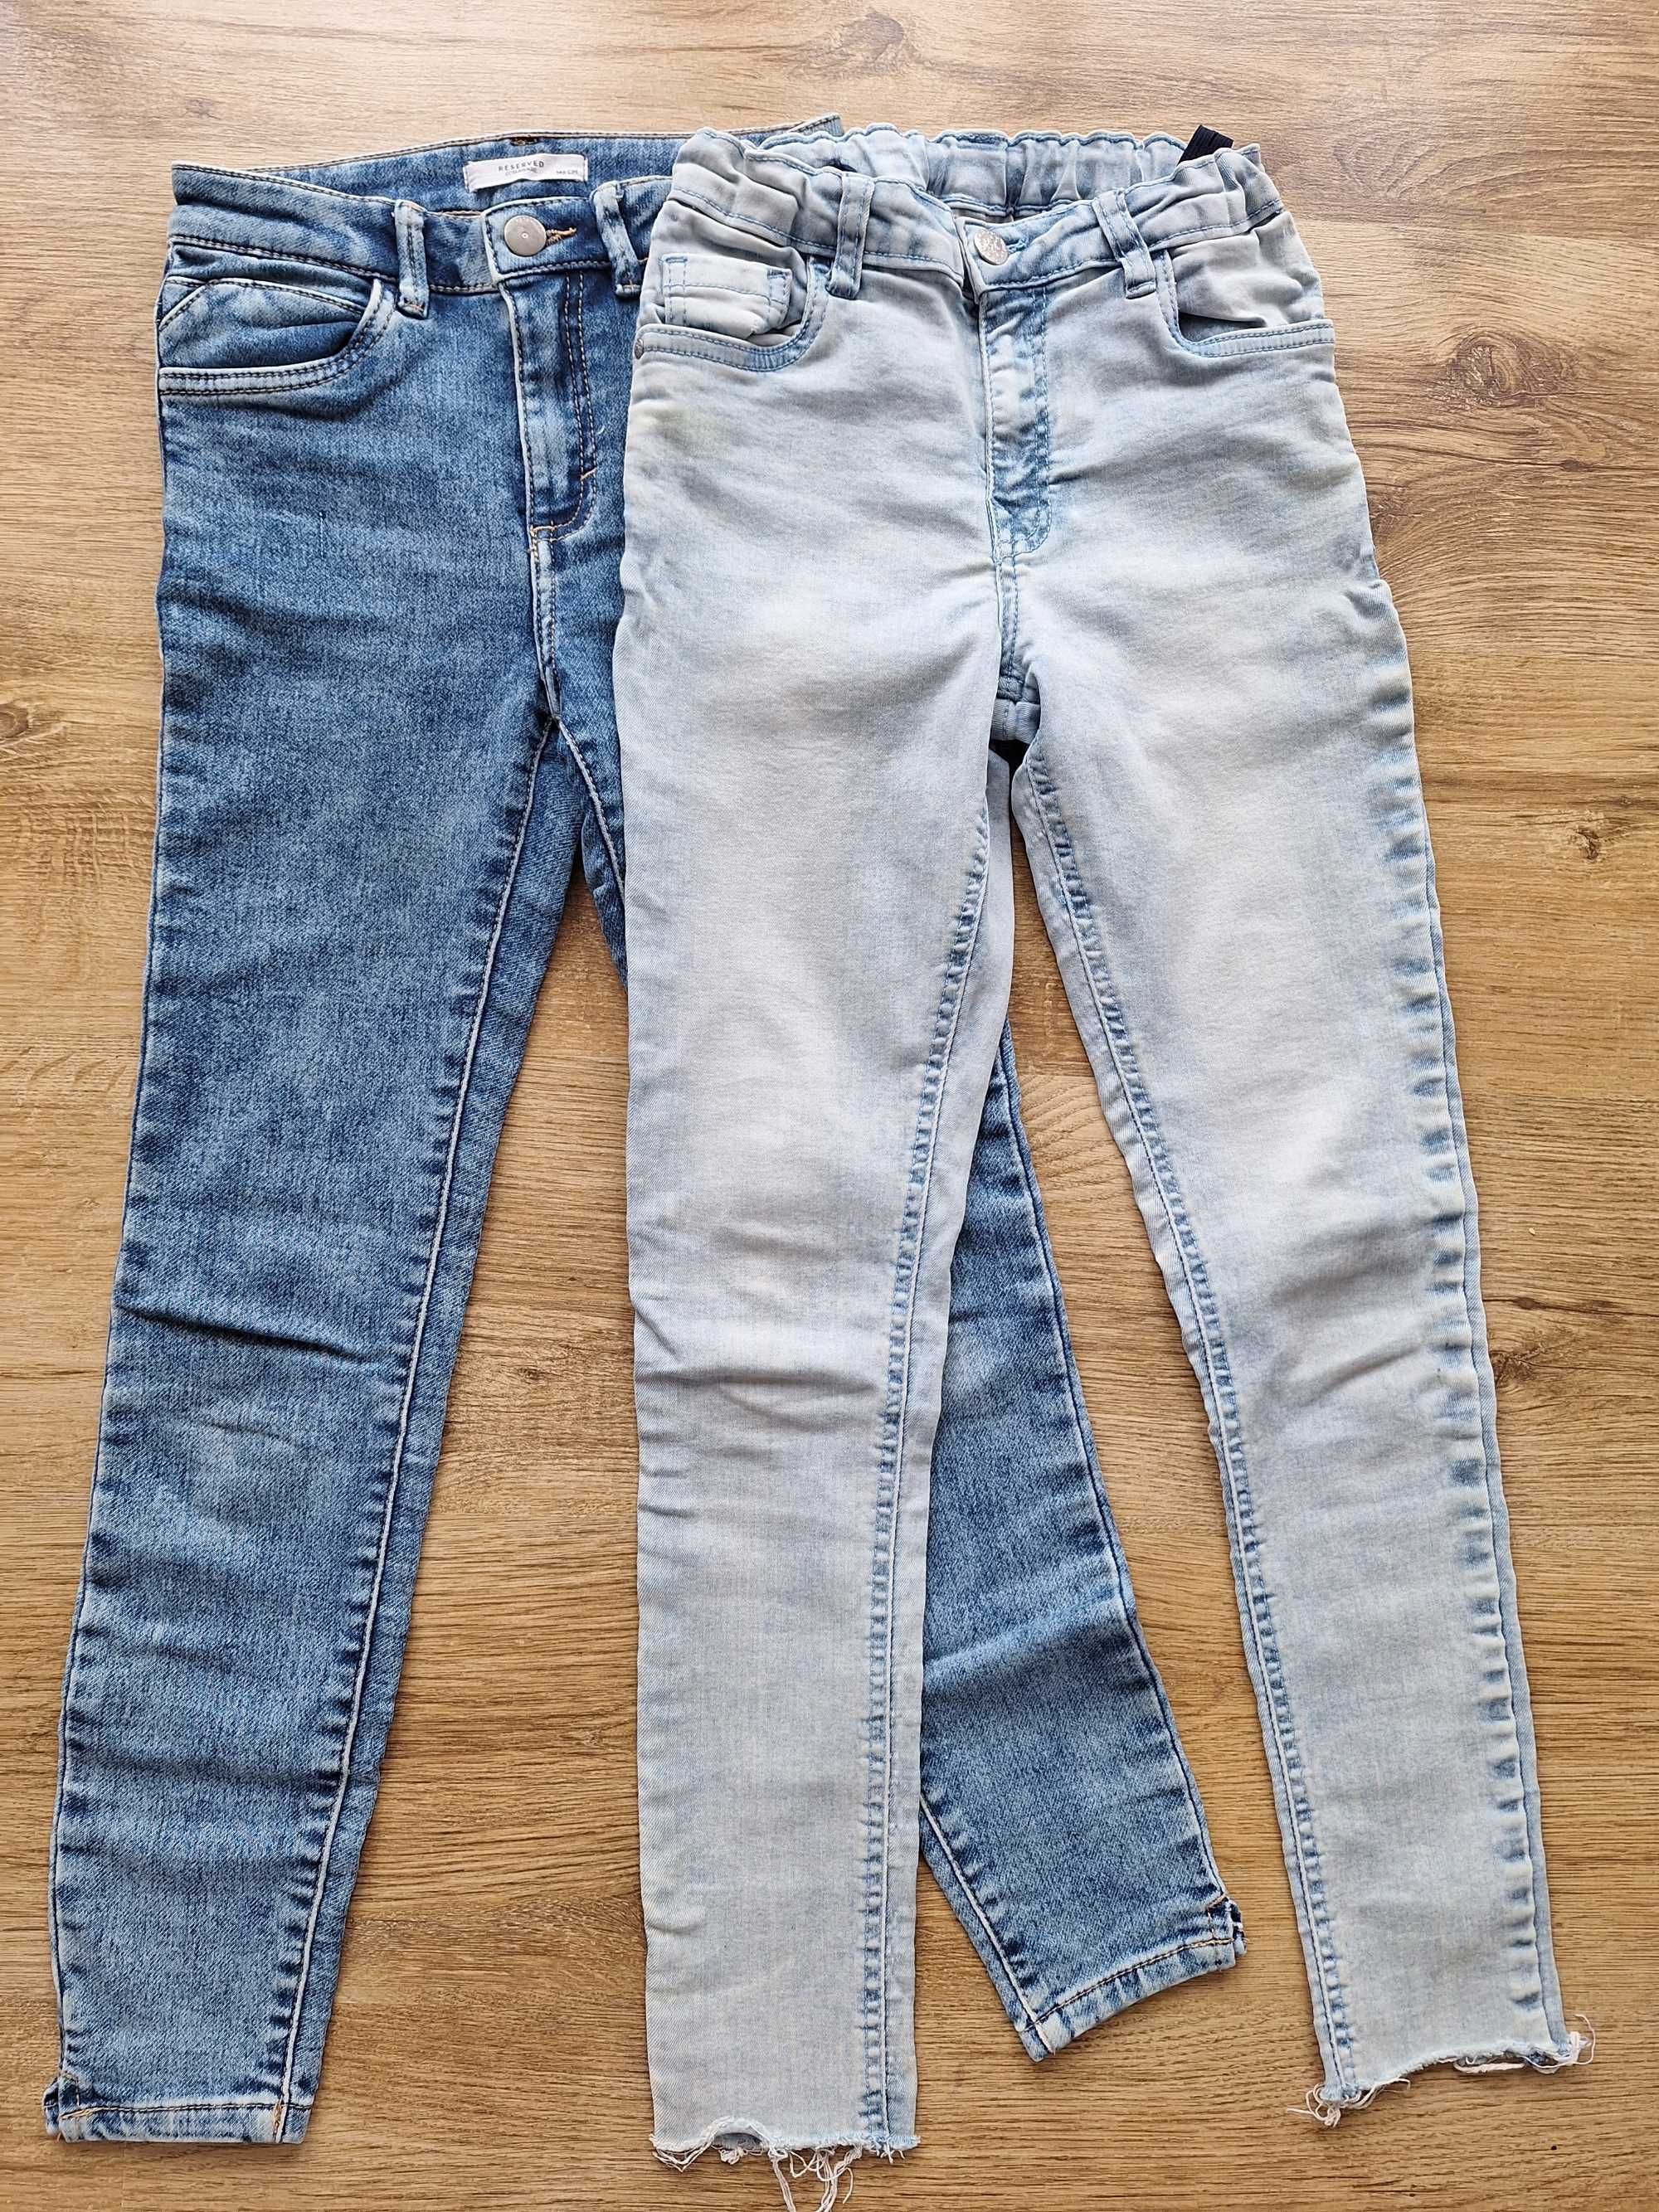 Spodnie jeansowe rurki * RESERVED* i inne  2 PARY -  Rozmiar  146 cm